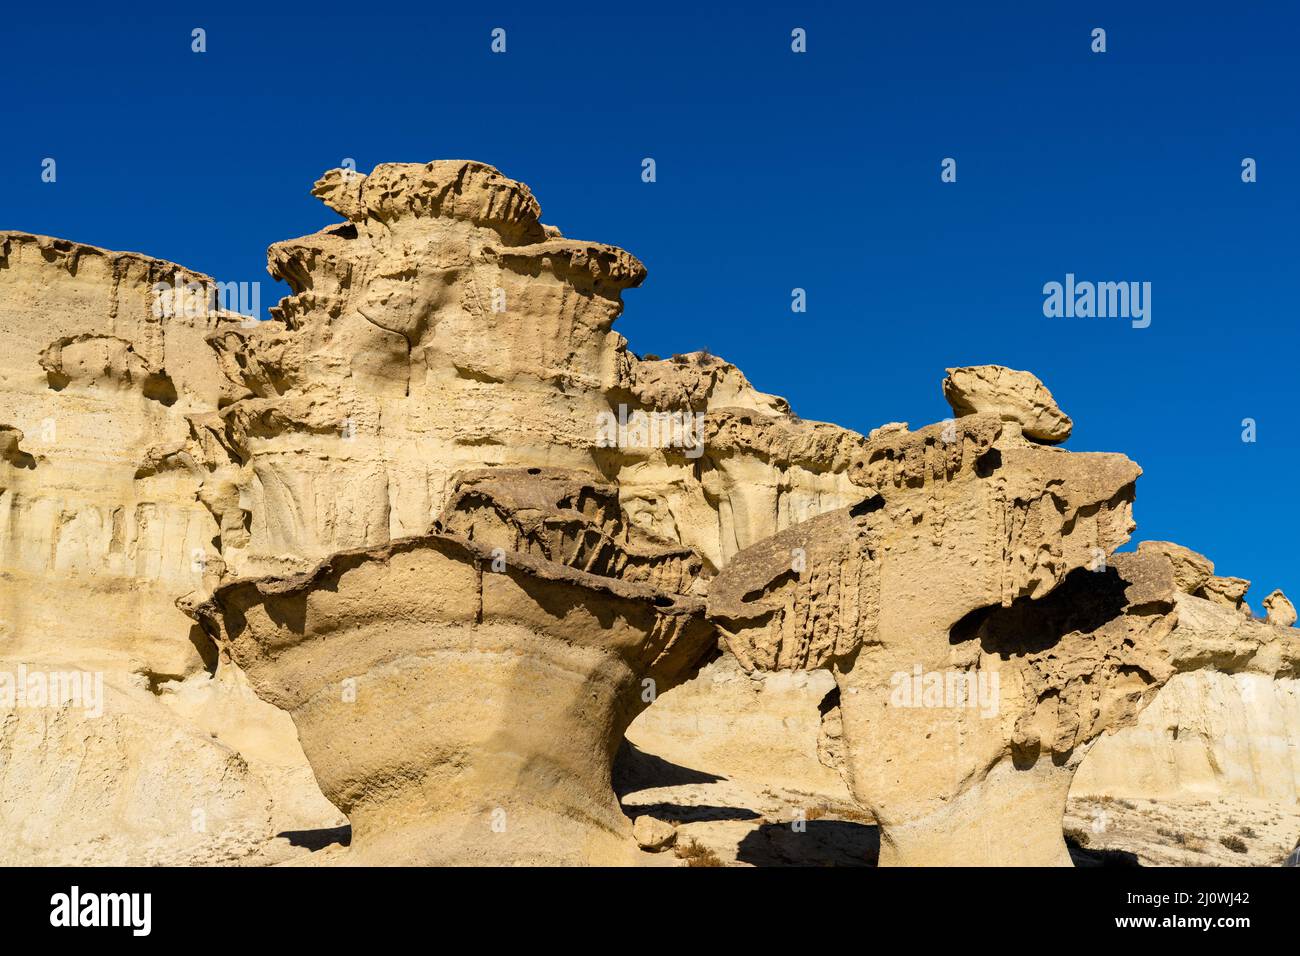 Ein Blick auf die berühmten Sandsteinerosionen und Hoodoos in Bolnuevo unter einem klaren blauen Himmel Stockfoto